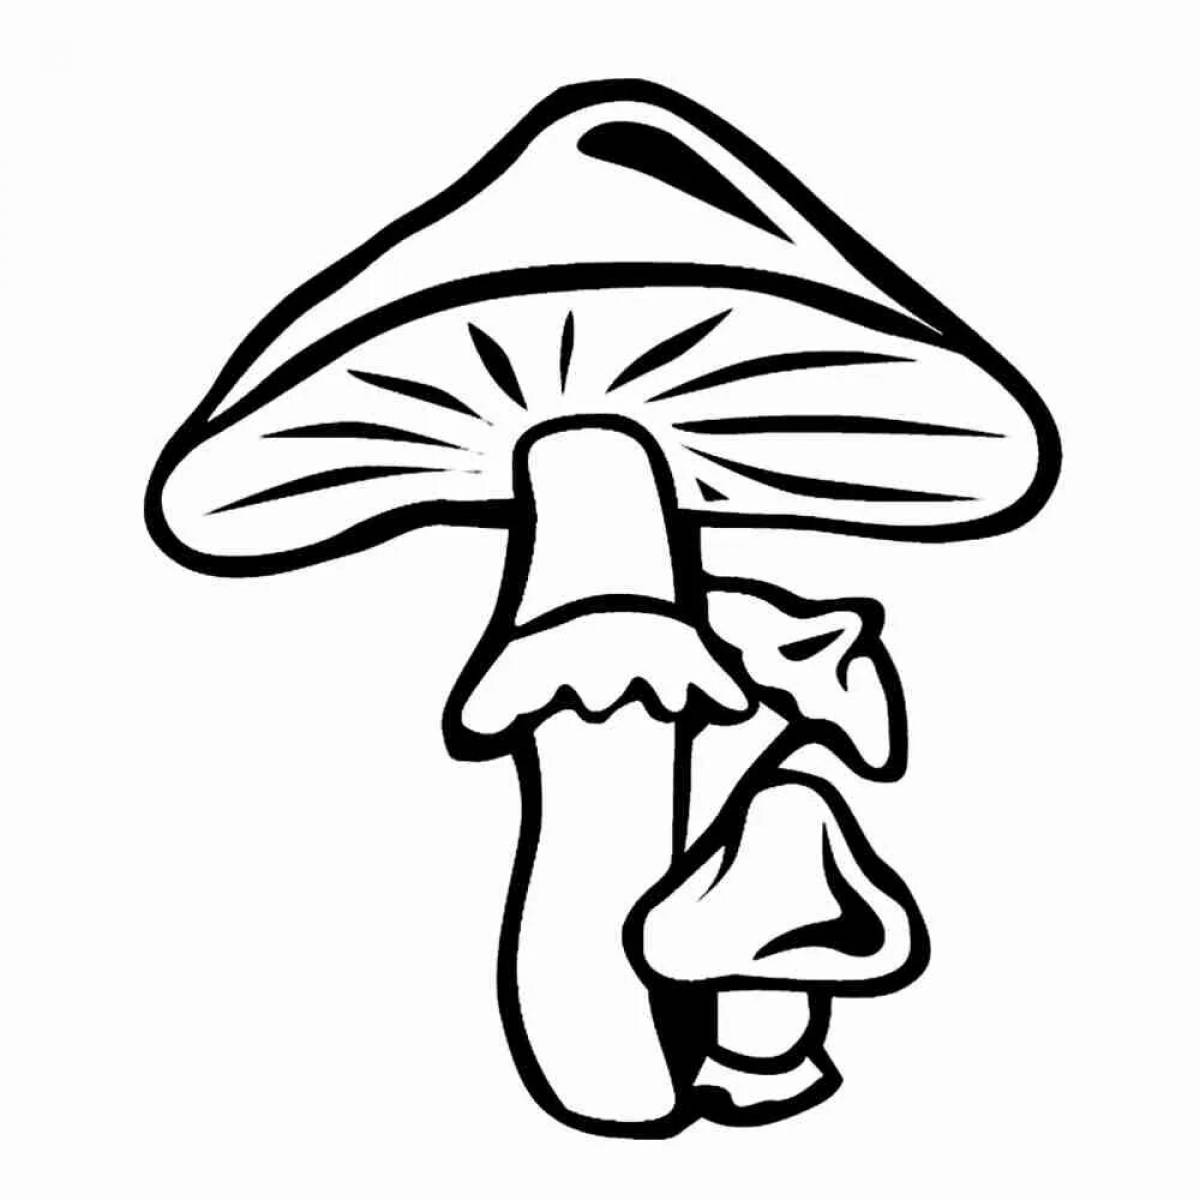 Bewitching toadstool mushrooms